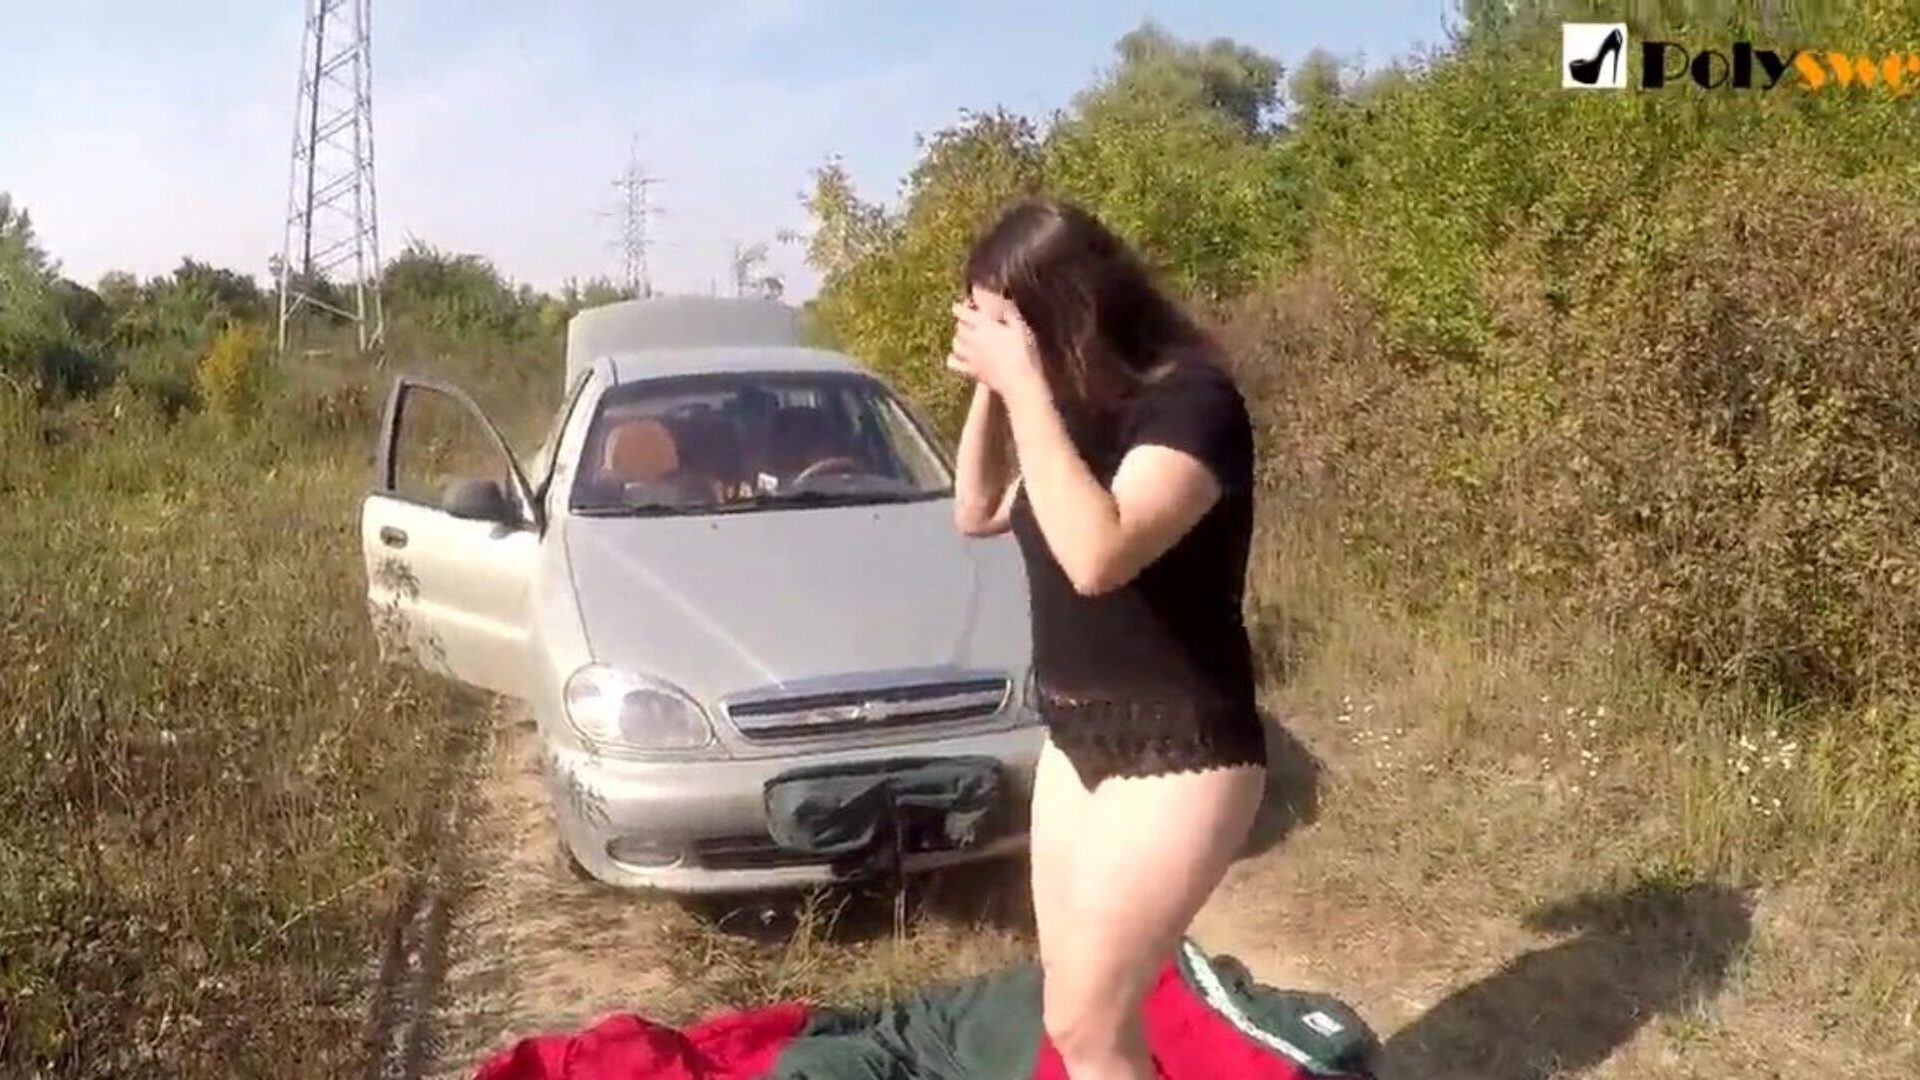 javna masturbacija djevojka Uhvatio me automobil na početku videa)